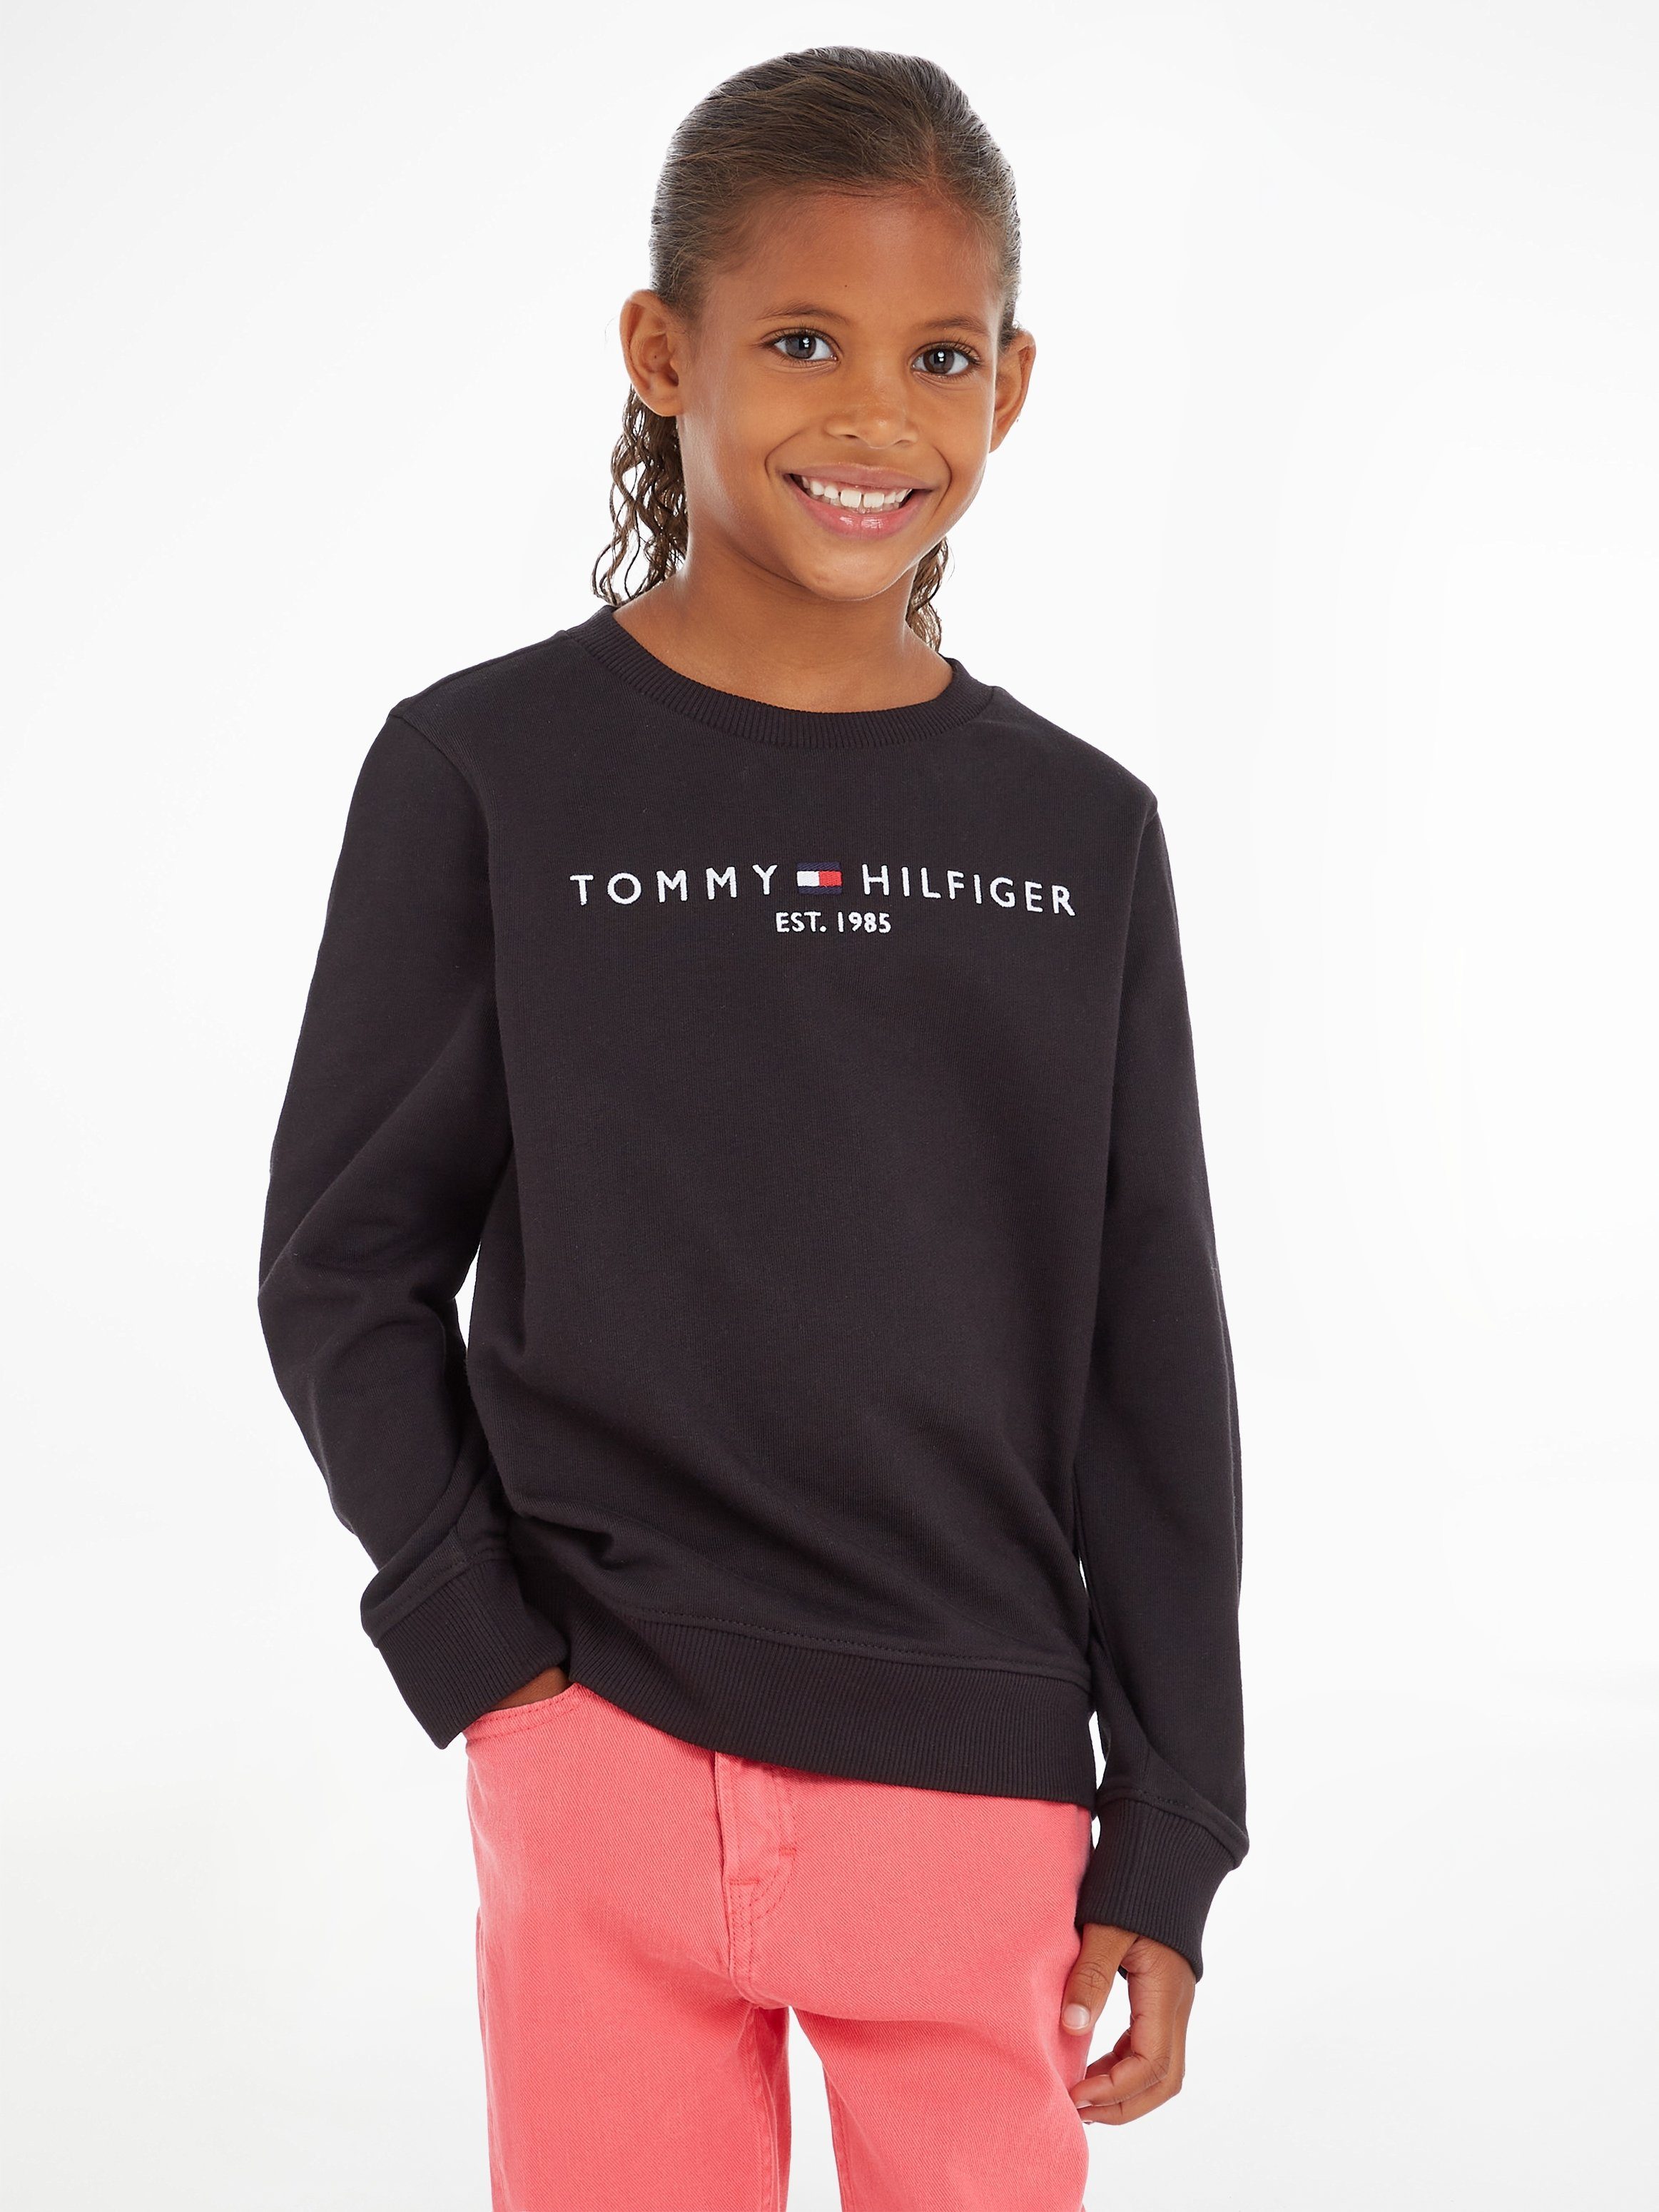 ESSENTIAL Hilfiger Mädchen, und Rippbündchen mit Tommy SWEATSHIRT Sweatshirt für Jungen weichen Säume